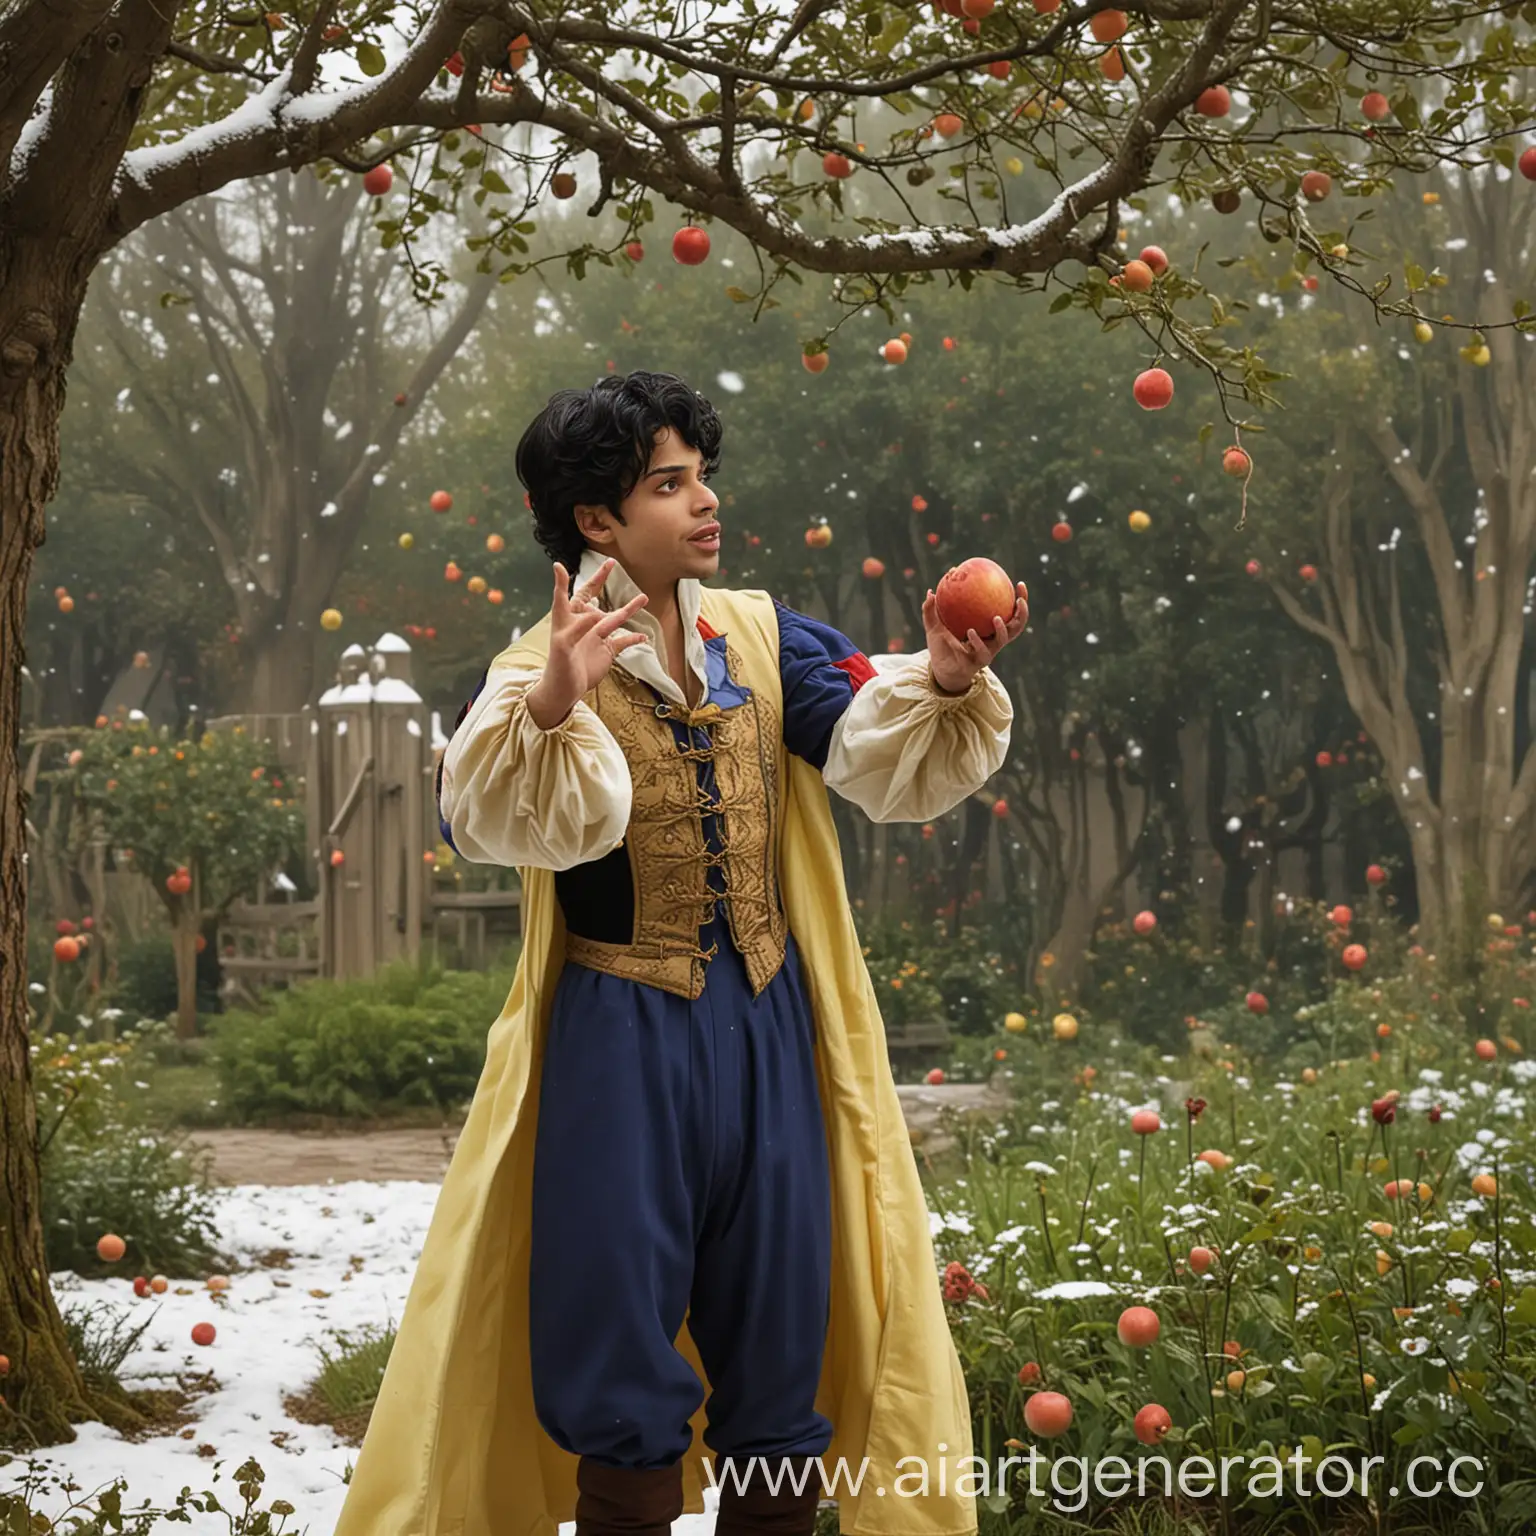 Принц подкидывает в сад Белоснежки яблоко